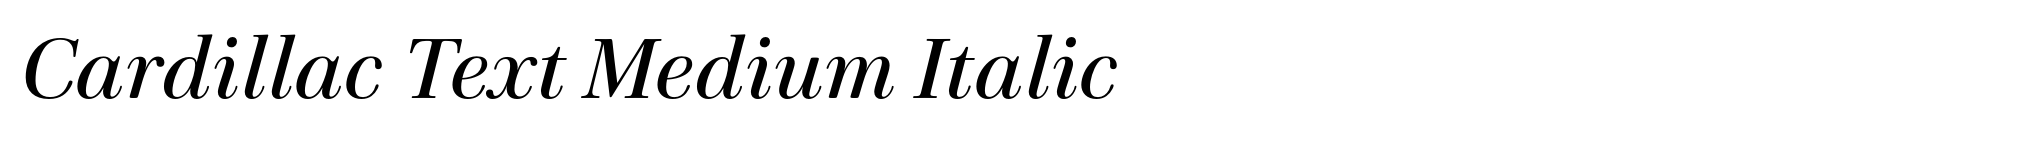 Cardillac Text Medium Italic image